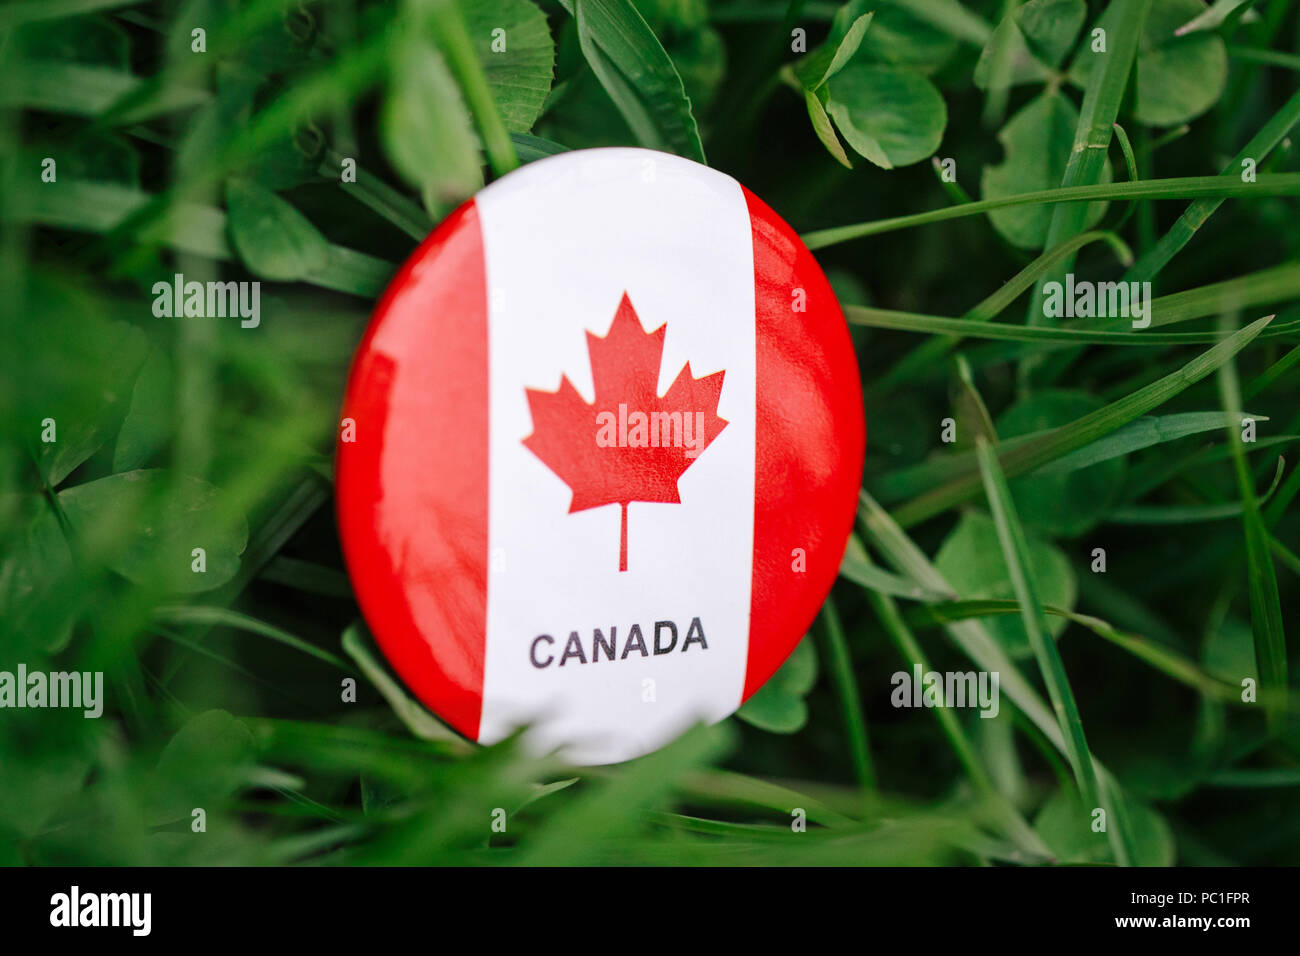 Huy hiệu Canada là biểu tượng quốc gia rất được yêu thích và trân trọng ở Bắc Mỹ. Hình ảnh này sẽ giúp bạn hiểu hơn về những giá trị và quan niệm của đất nước Canada. Hãy khám phá ngay!